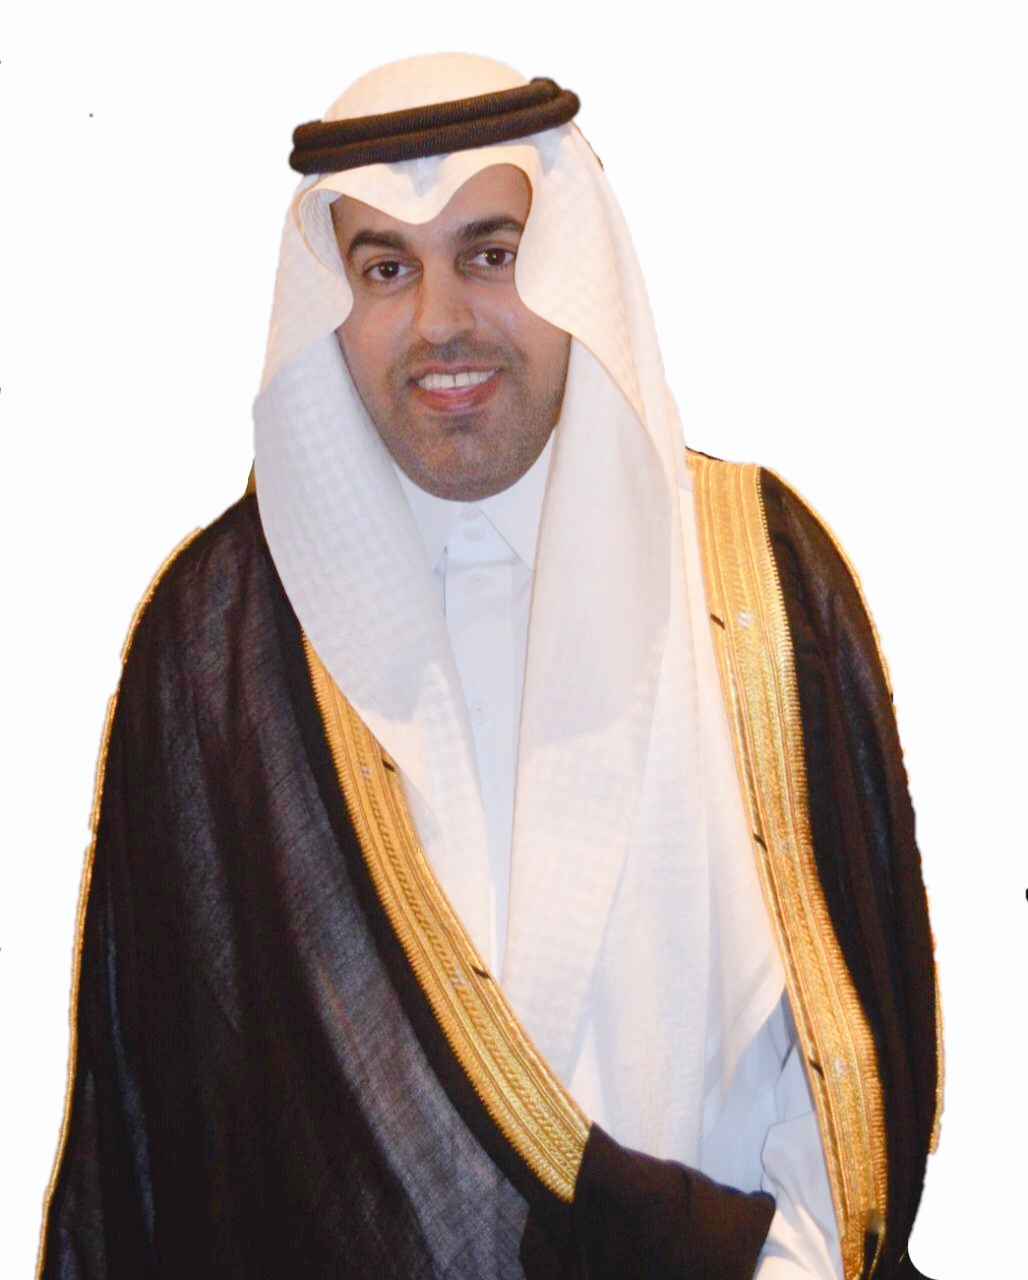 رئيس البرلمان العربي : كلمة خادم الحرمين الشريفين قدمت تشخيصاً دقيقاً للأزمة